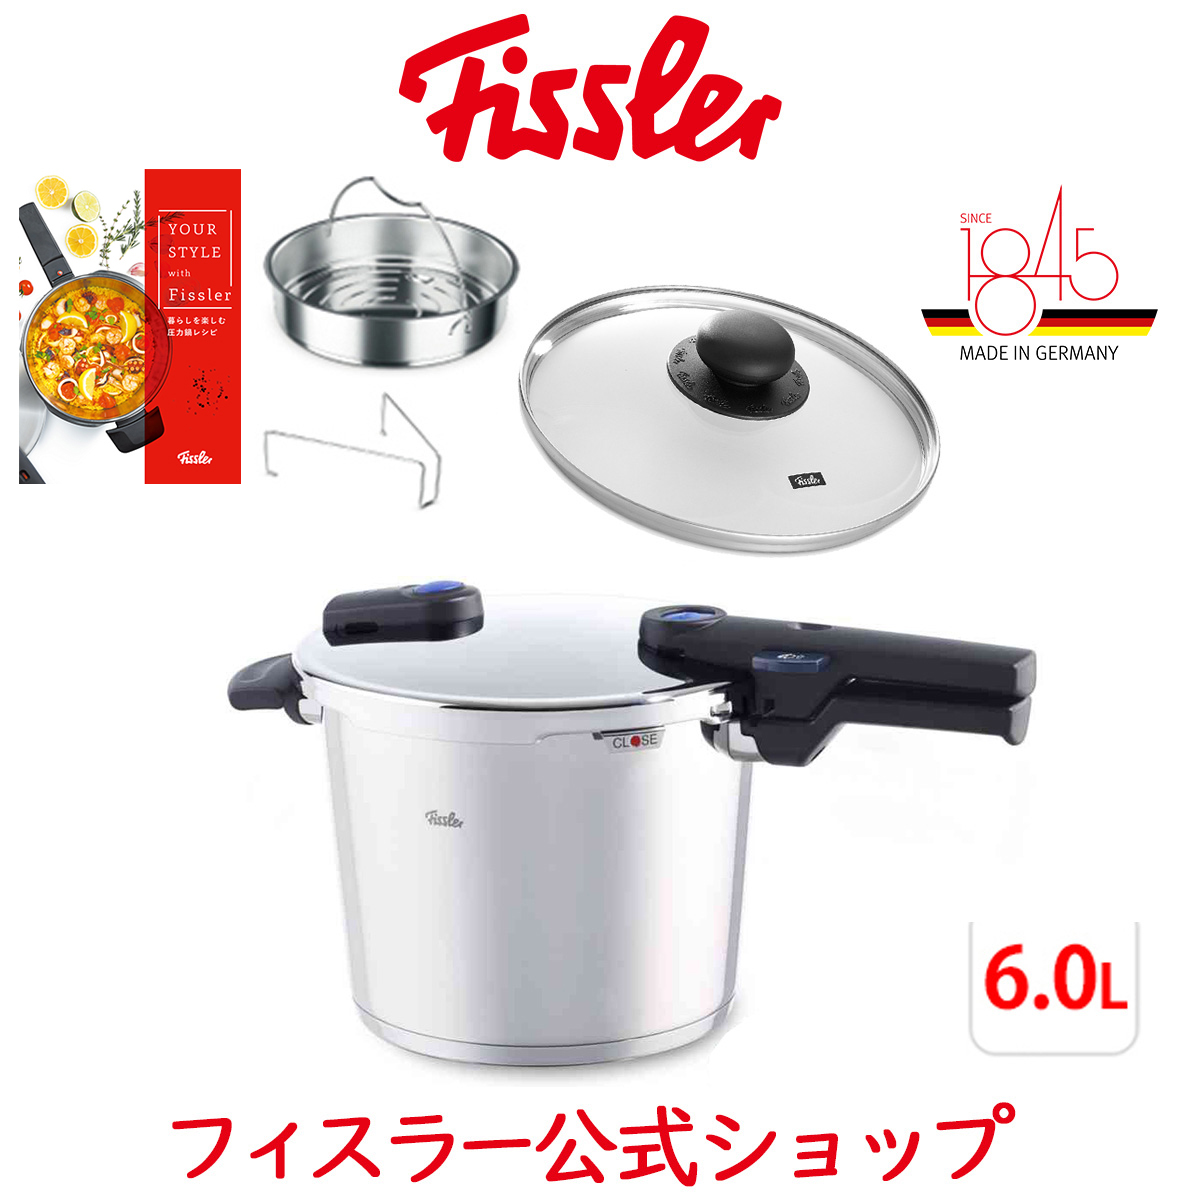 入荷済み  [圧力鍋] 6.0L オレンジ ビタクイックプラス Fissler フィスラー 調理器具